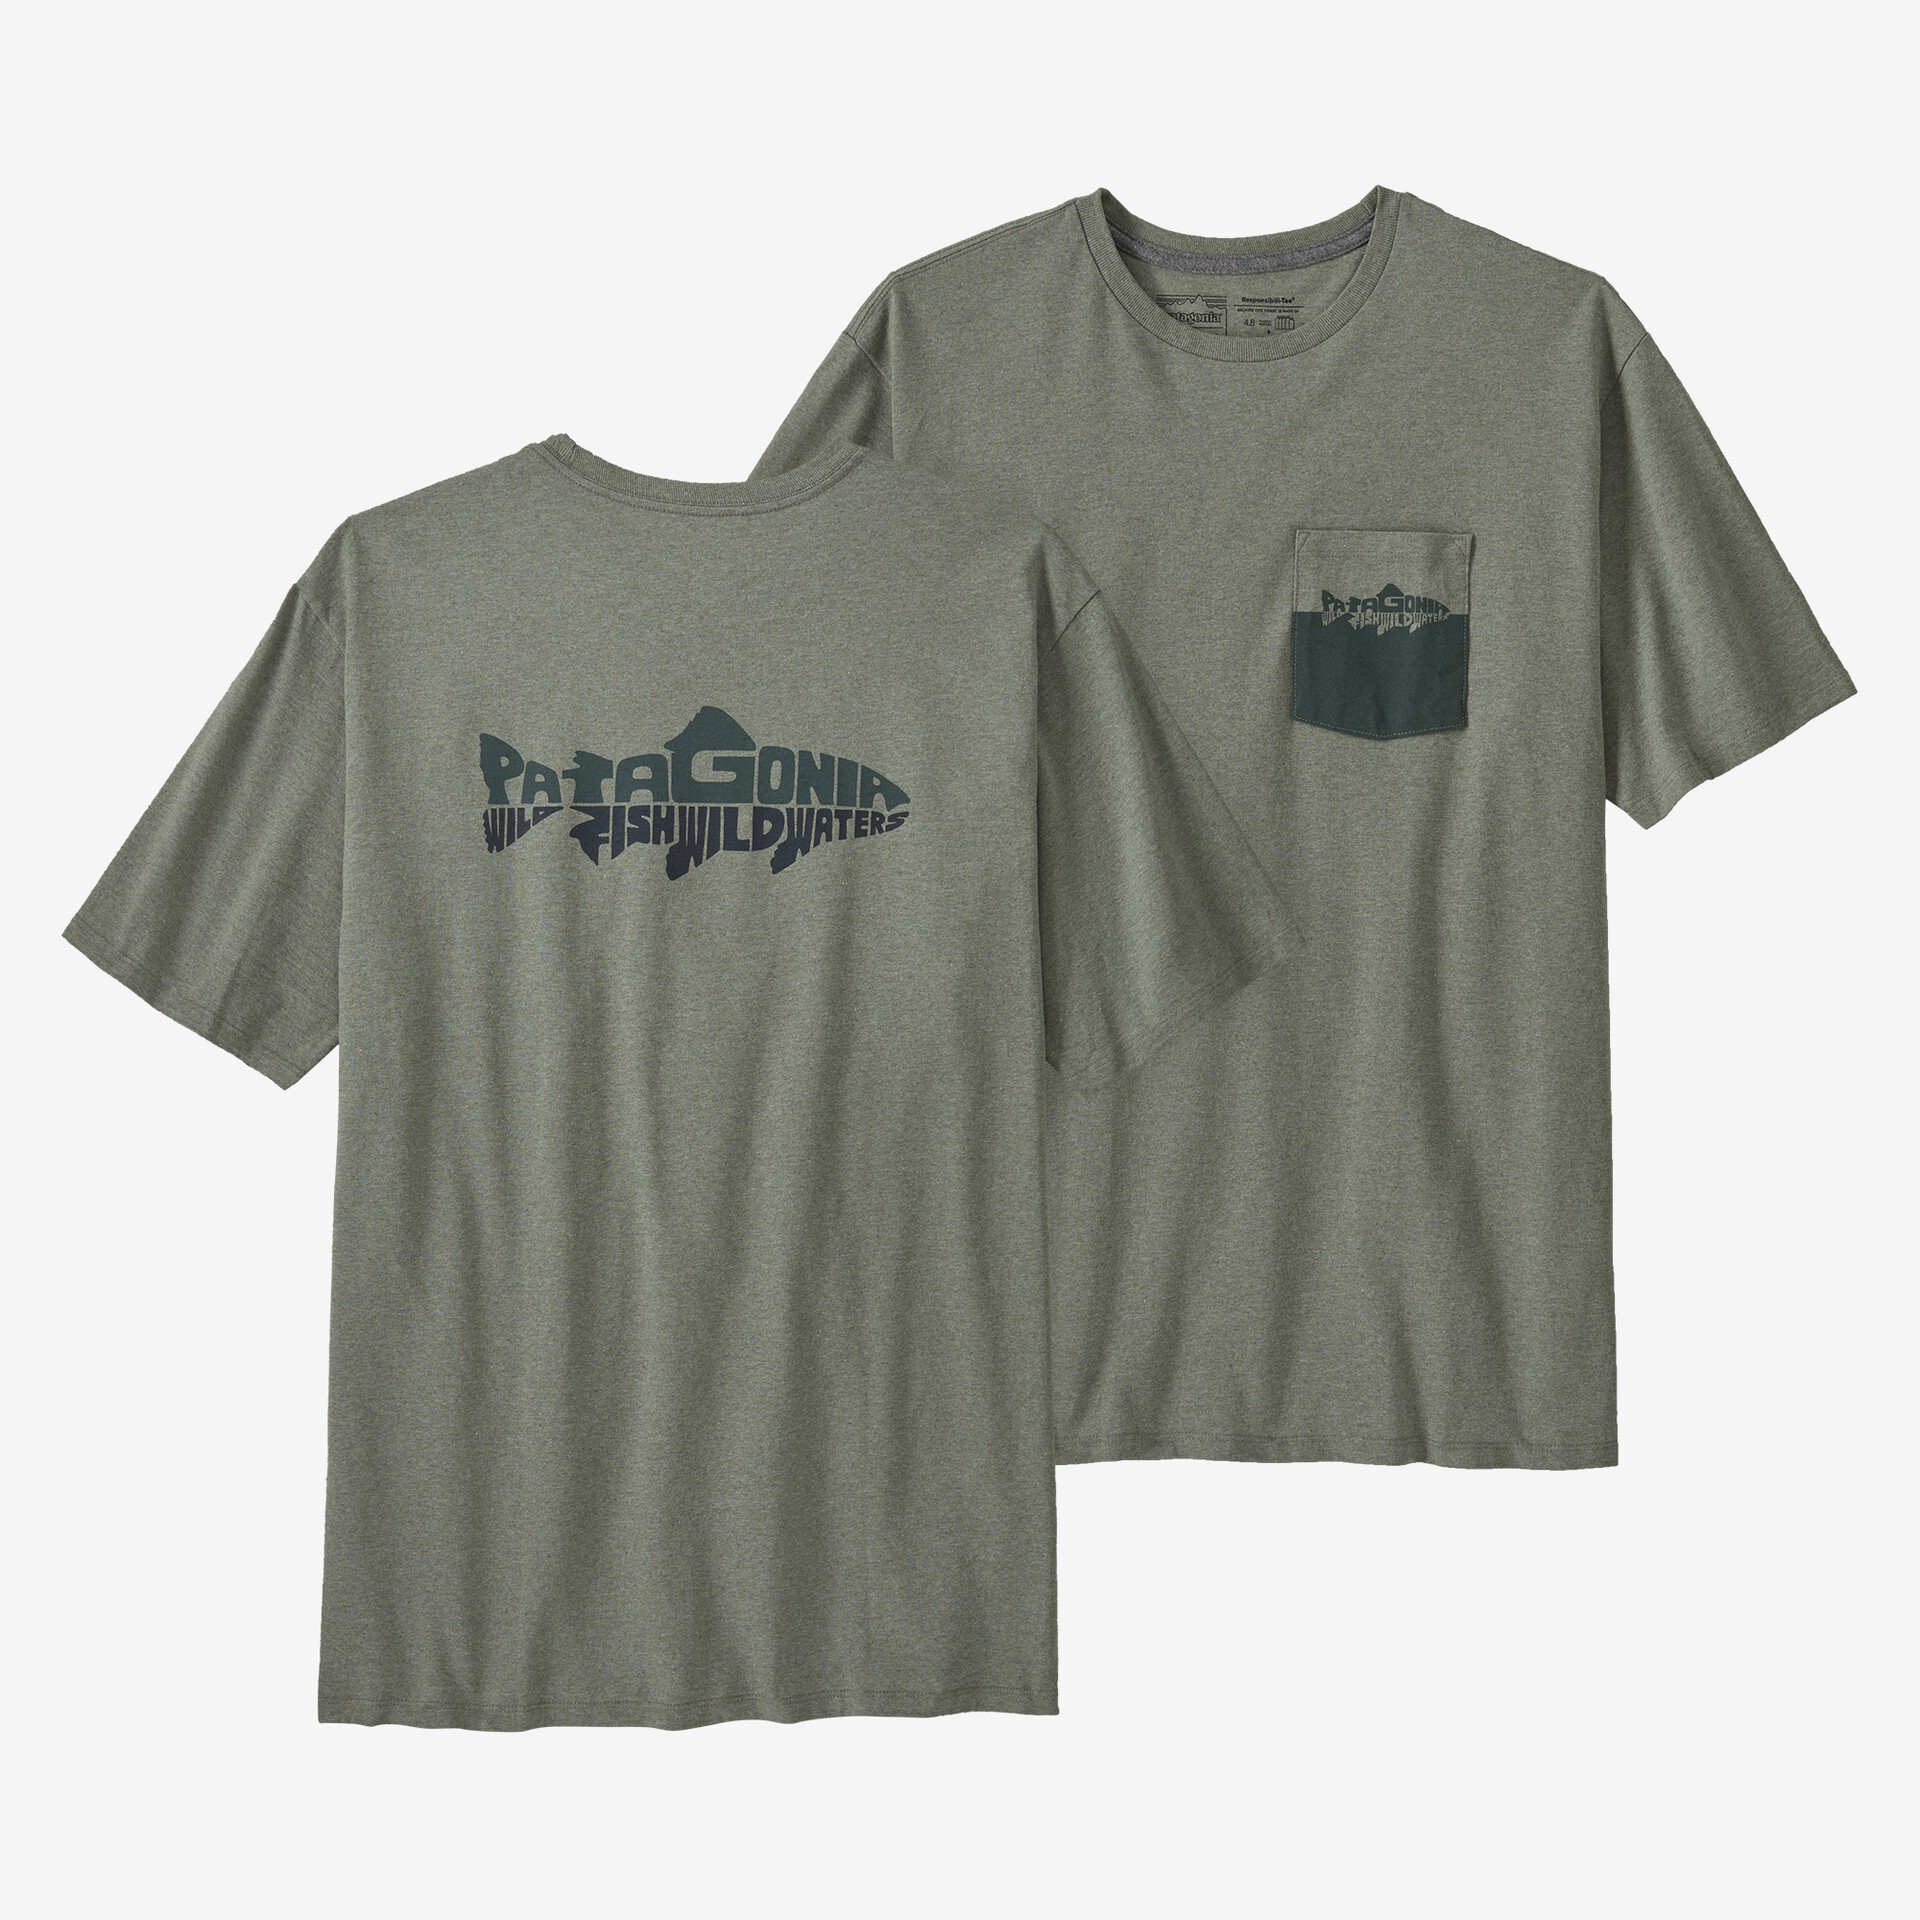 Мужская ответственная футболка с карманом Wild Waterline Patagonia, цвет Sleet Green мужская ответственная футболка с логотипом и карманом patagonia черный